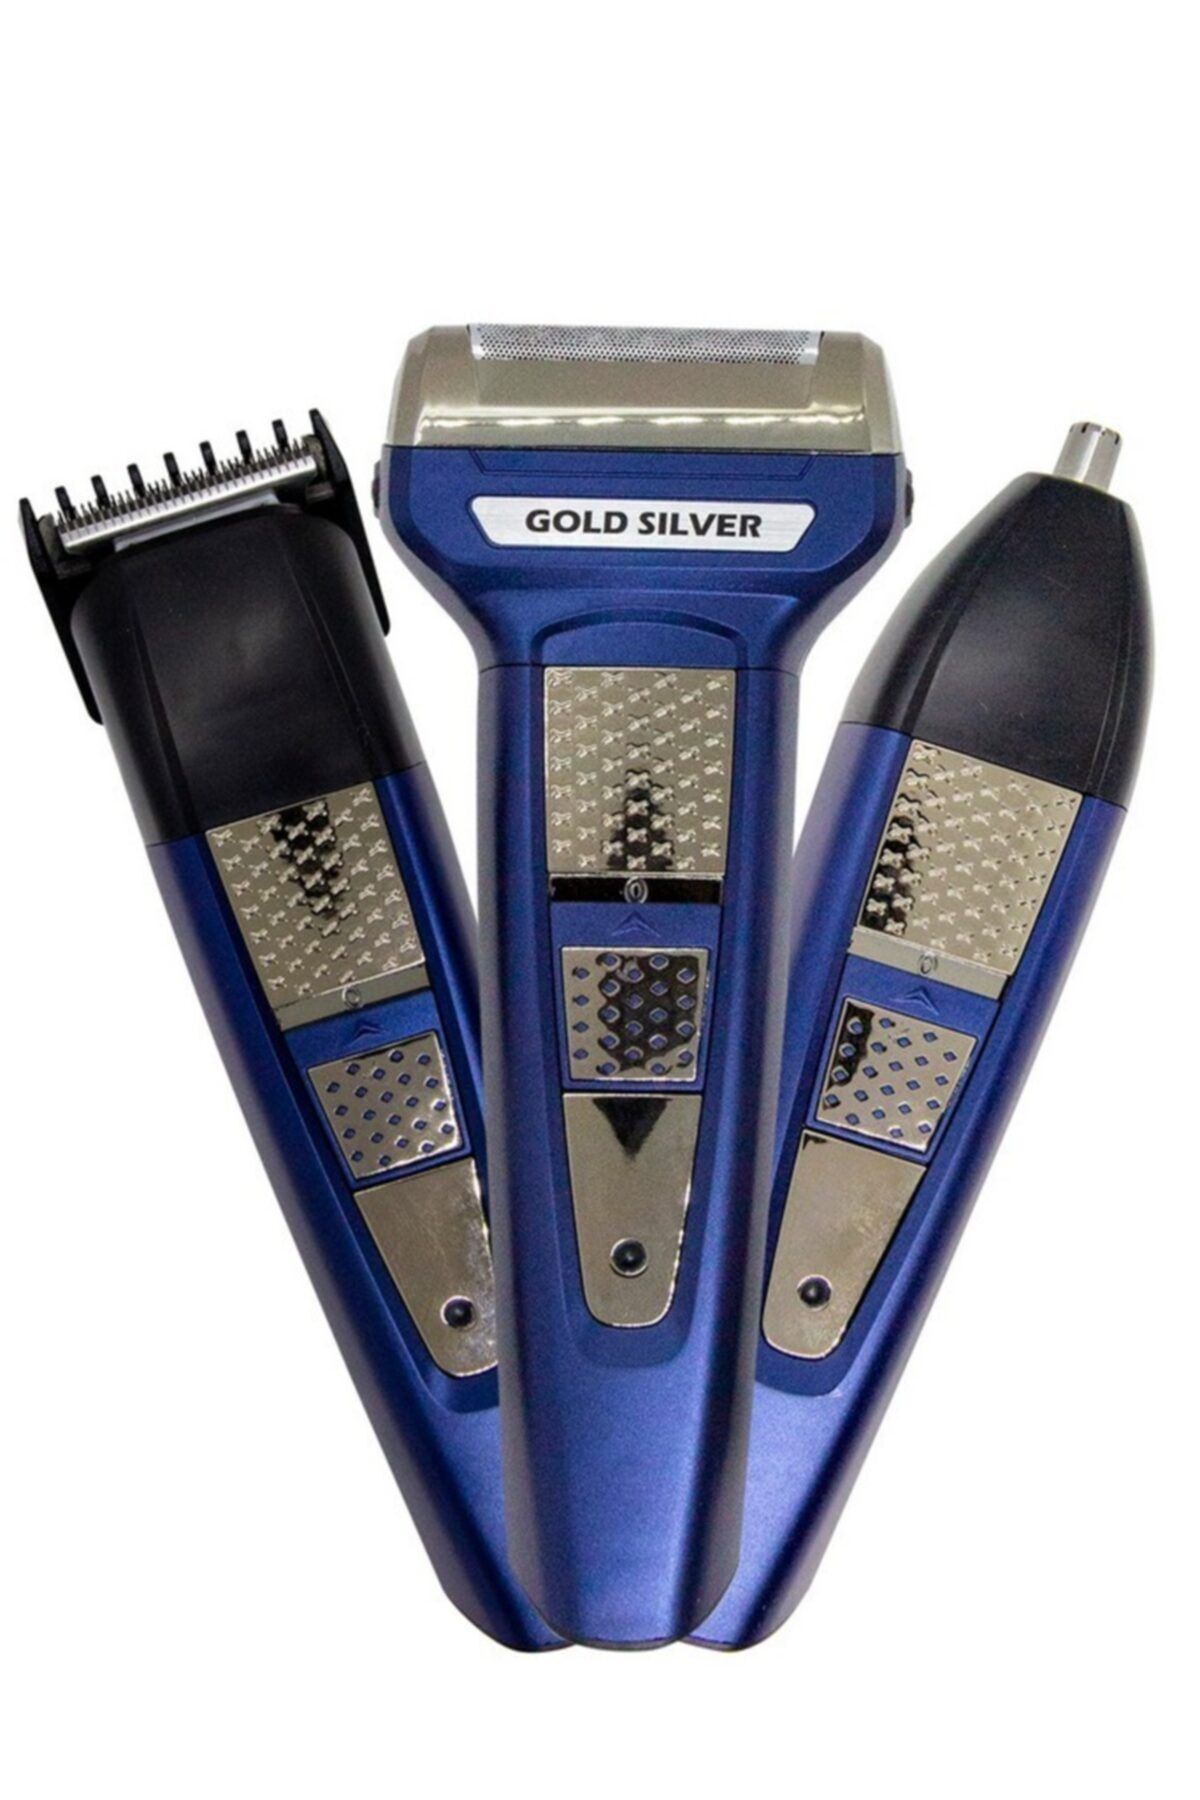 sinerjishop Gold Sılver Gs-150 Çok Amaçlı Saç Sakal Traş Makinesi